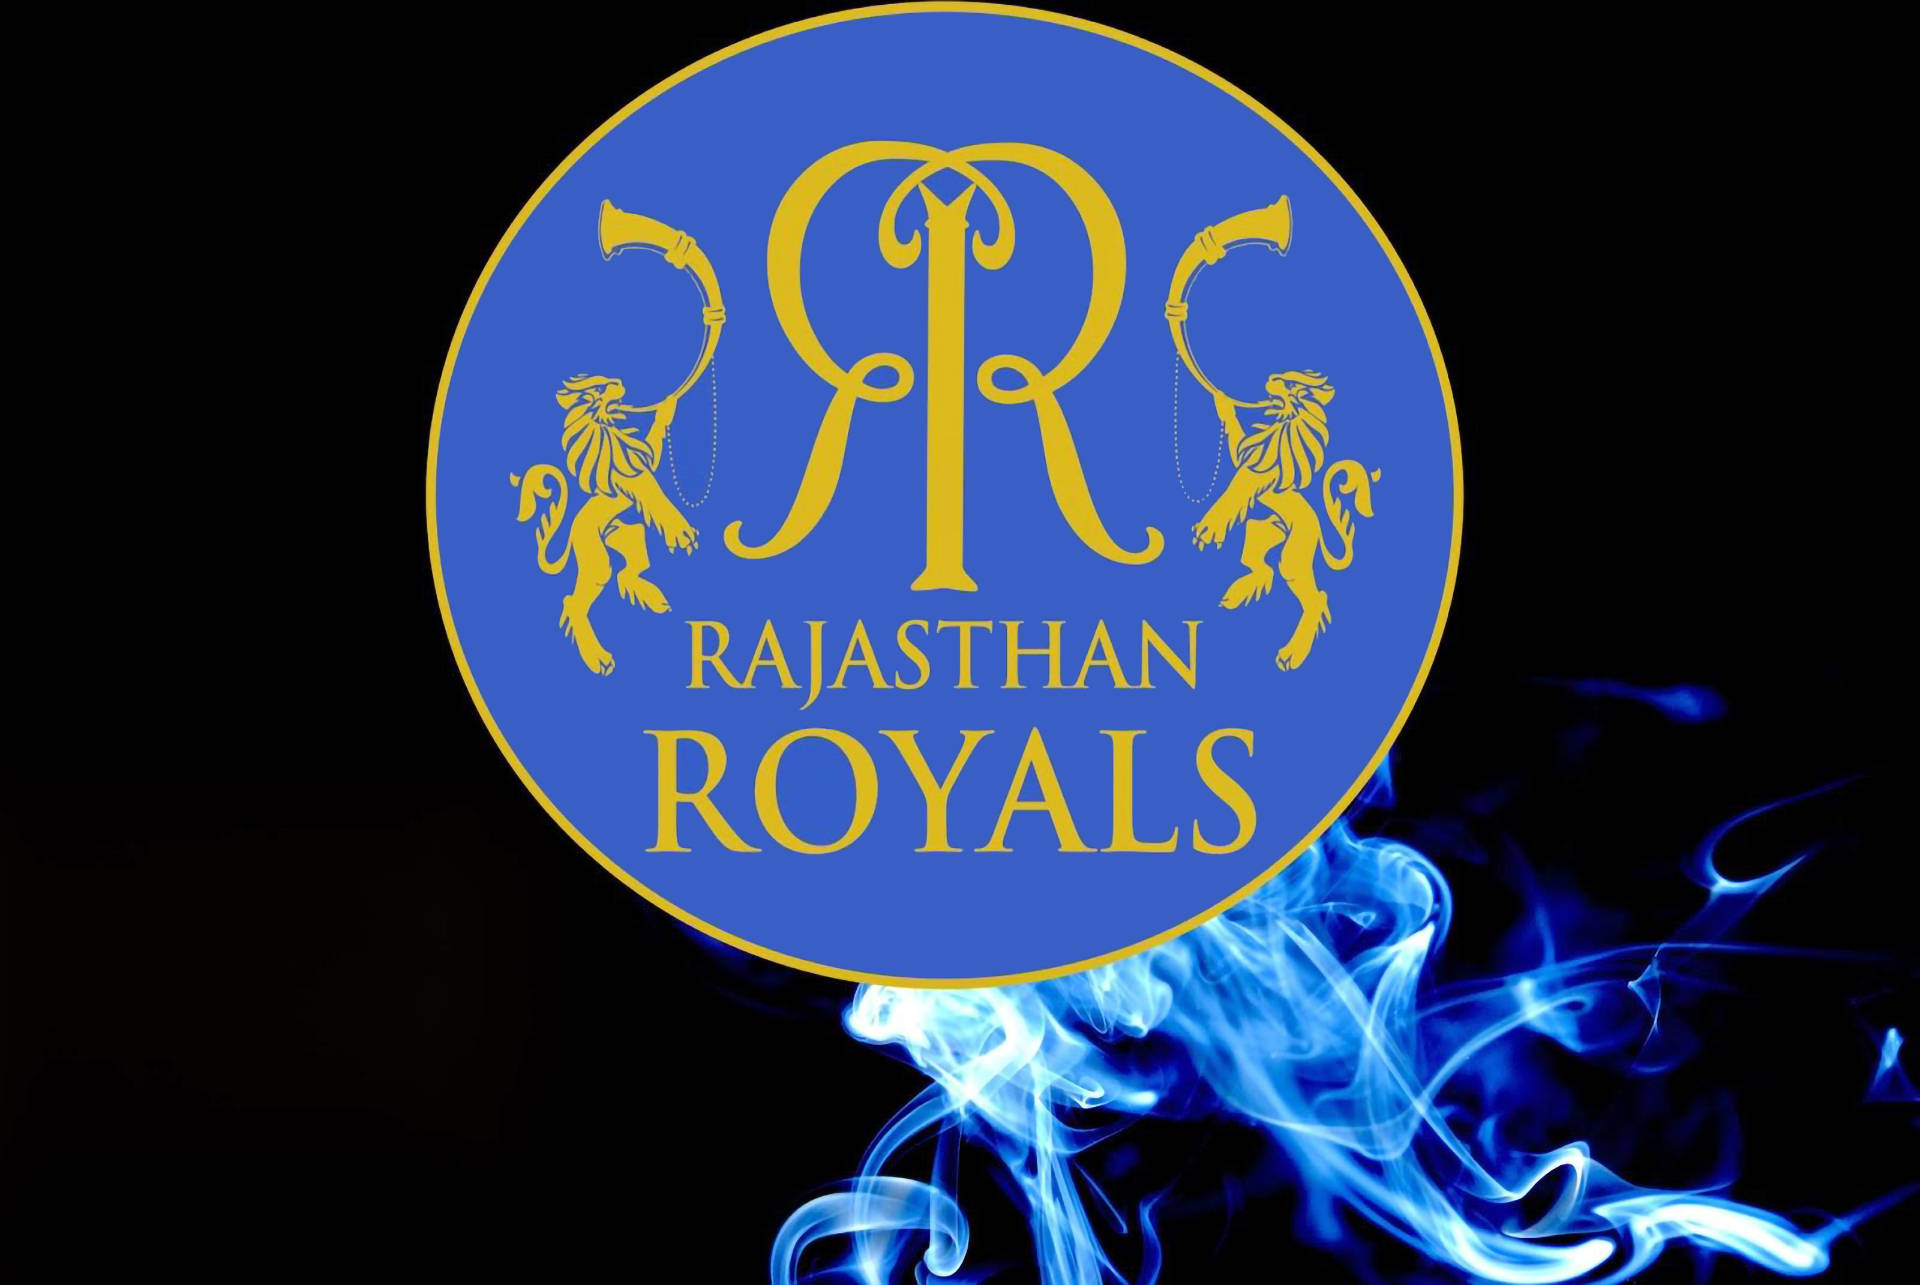 Rajasthan Royals Blue Smoke